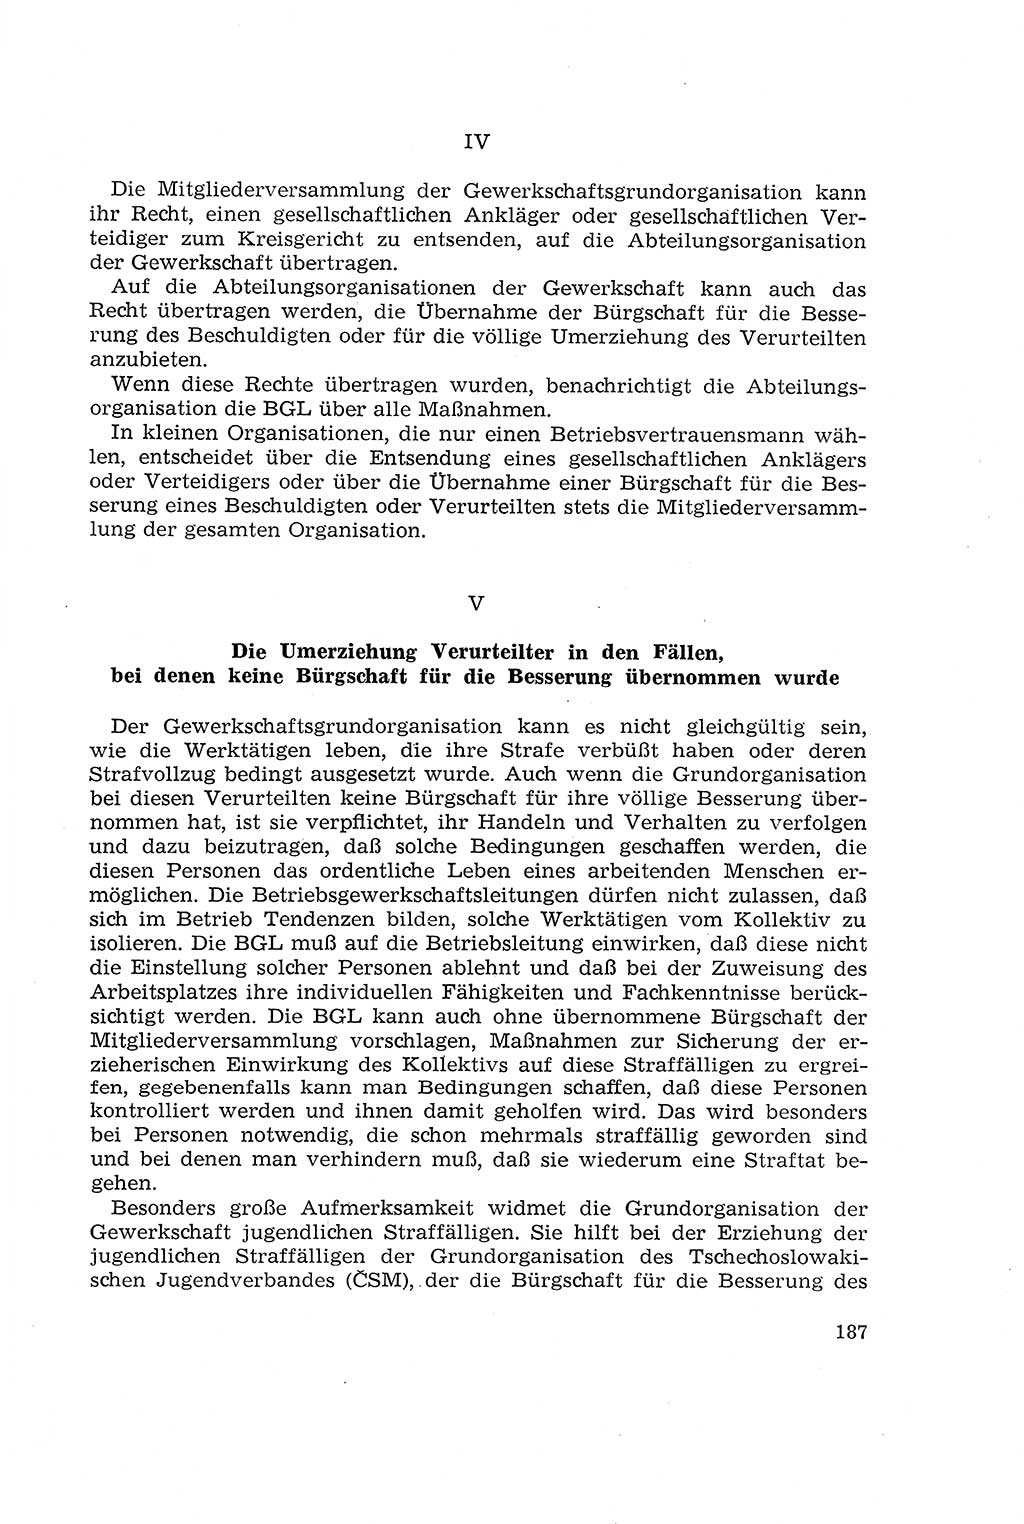 Die Mitwirkung der Werktätigen am Strafverfahren [Deutsche Demokratische Republik (DDR)] 1966, Seite 187 (Mitw. Str.-Verf. DDR 1966, S. 187)